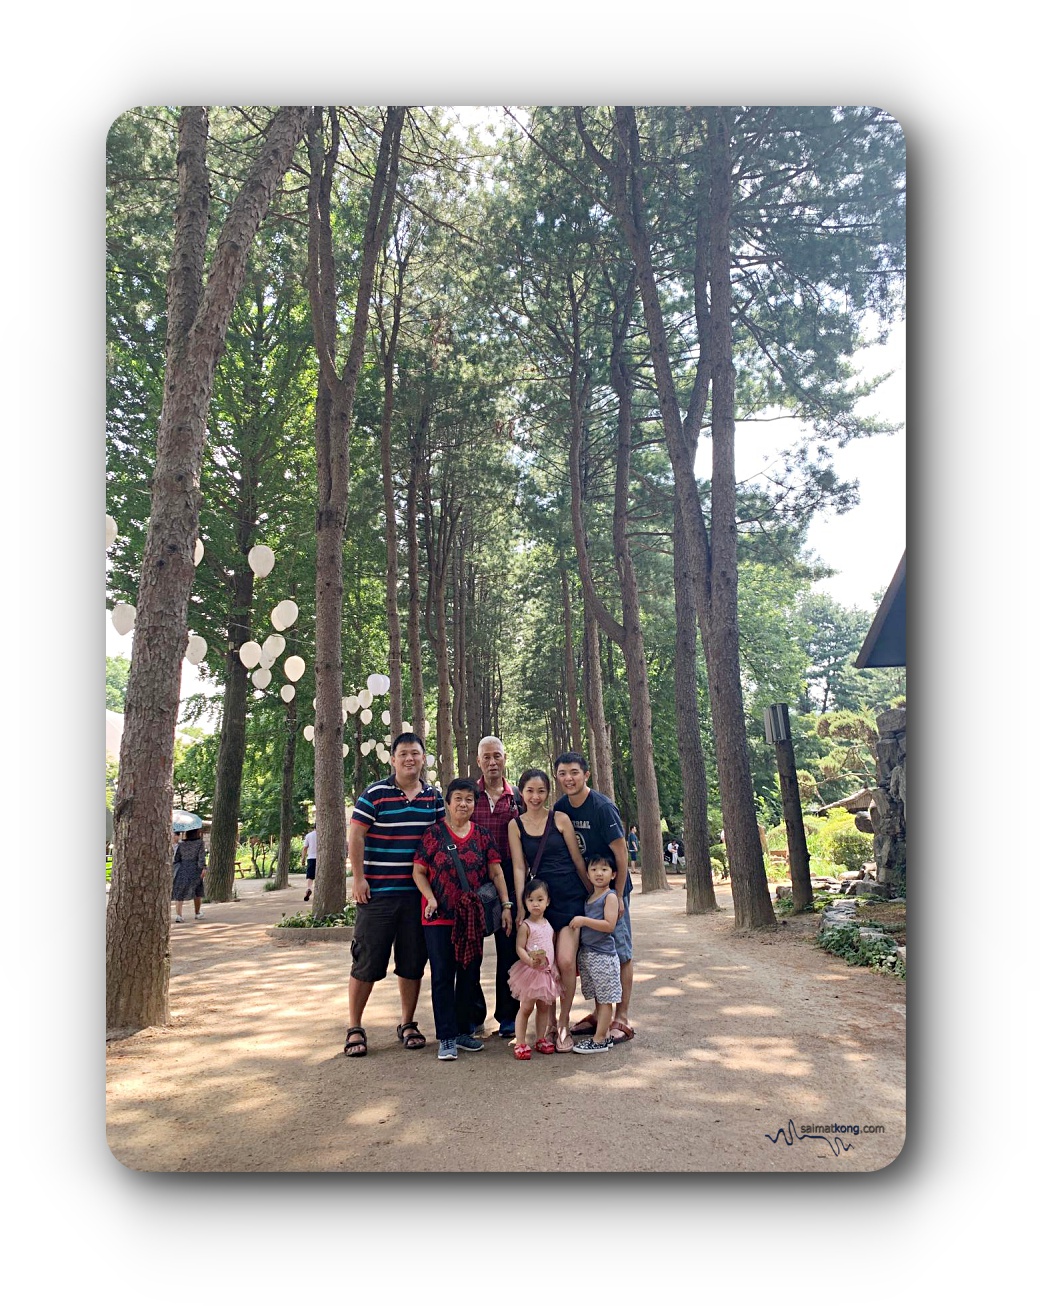 Seoul Trip 2019 Awesome Summer in Seoul - Us at Nami Island 